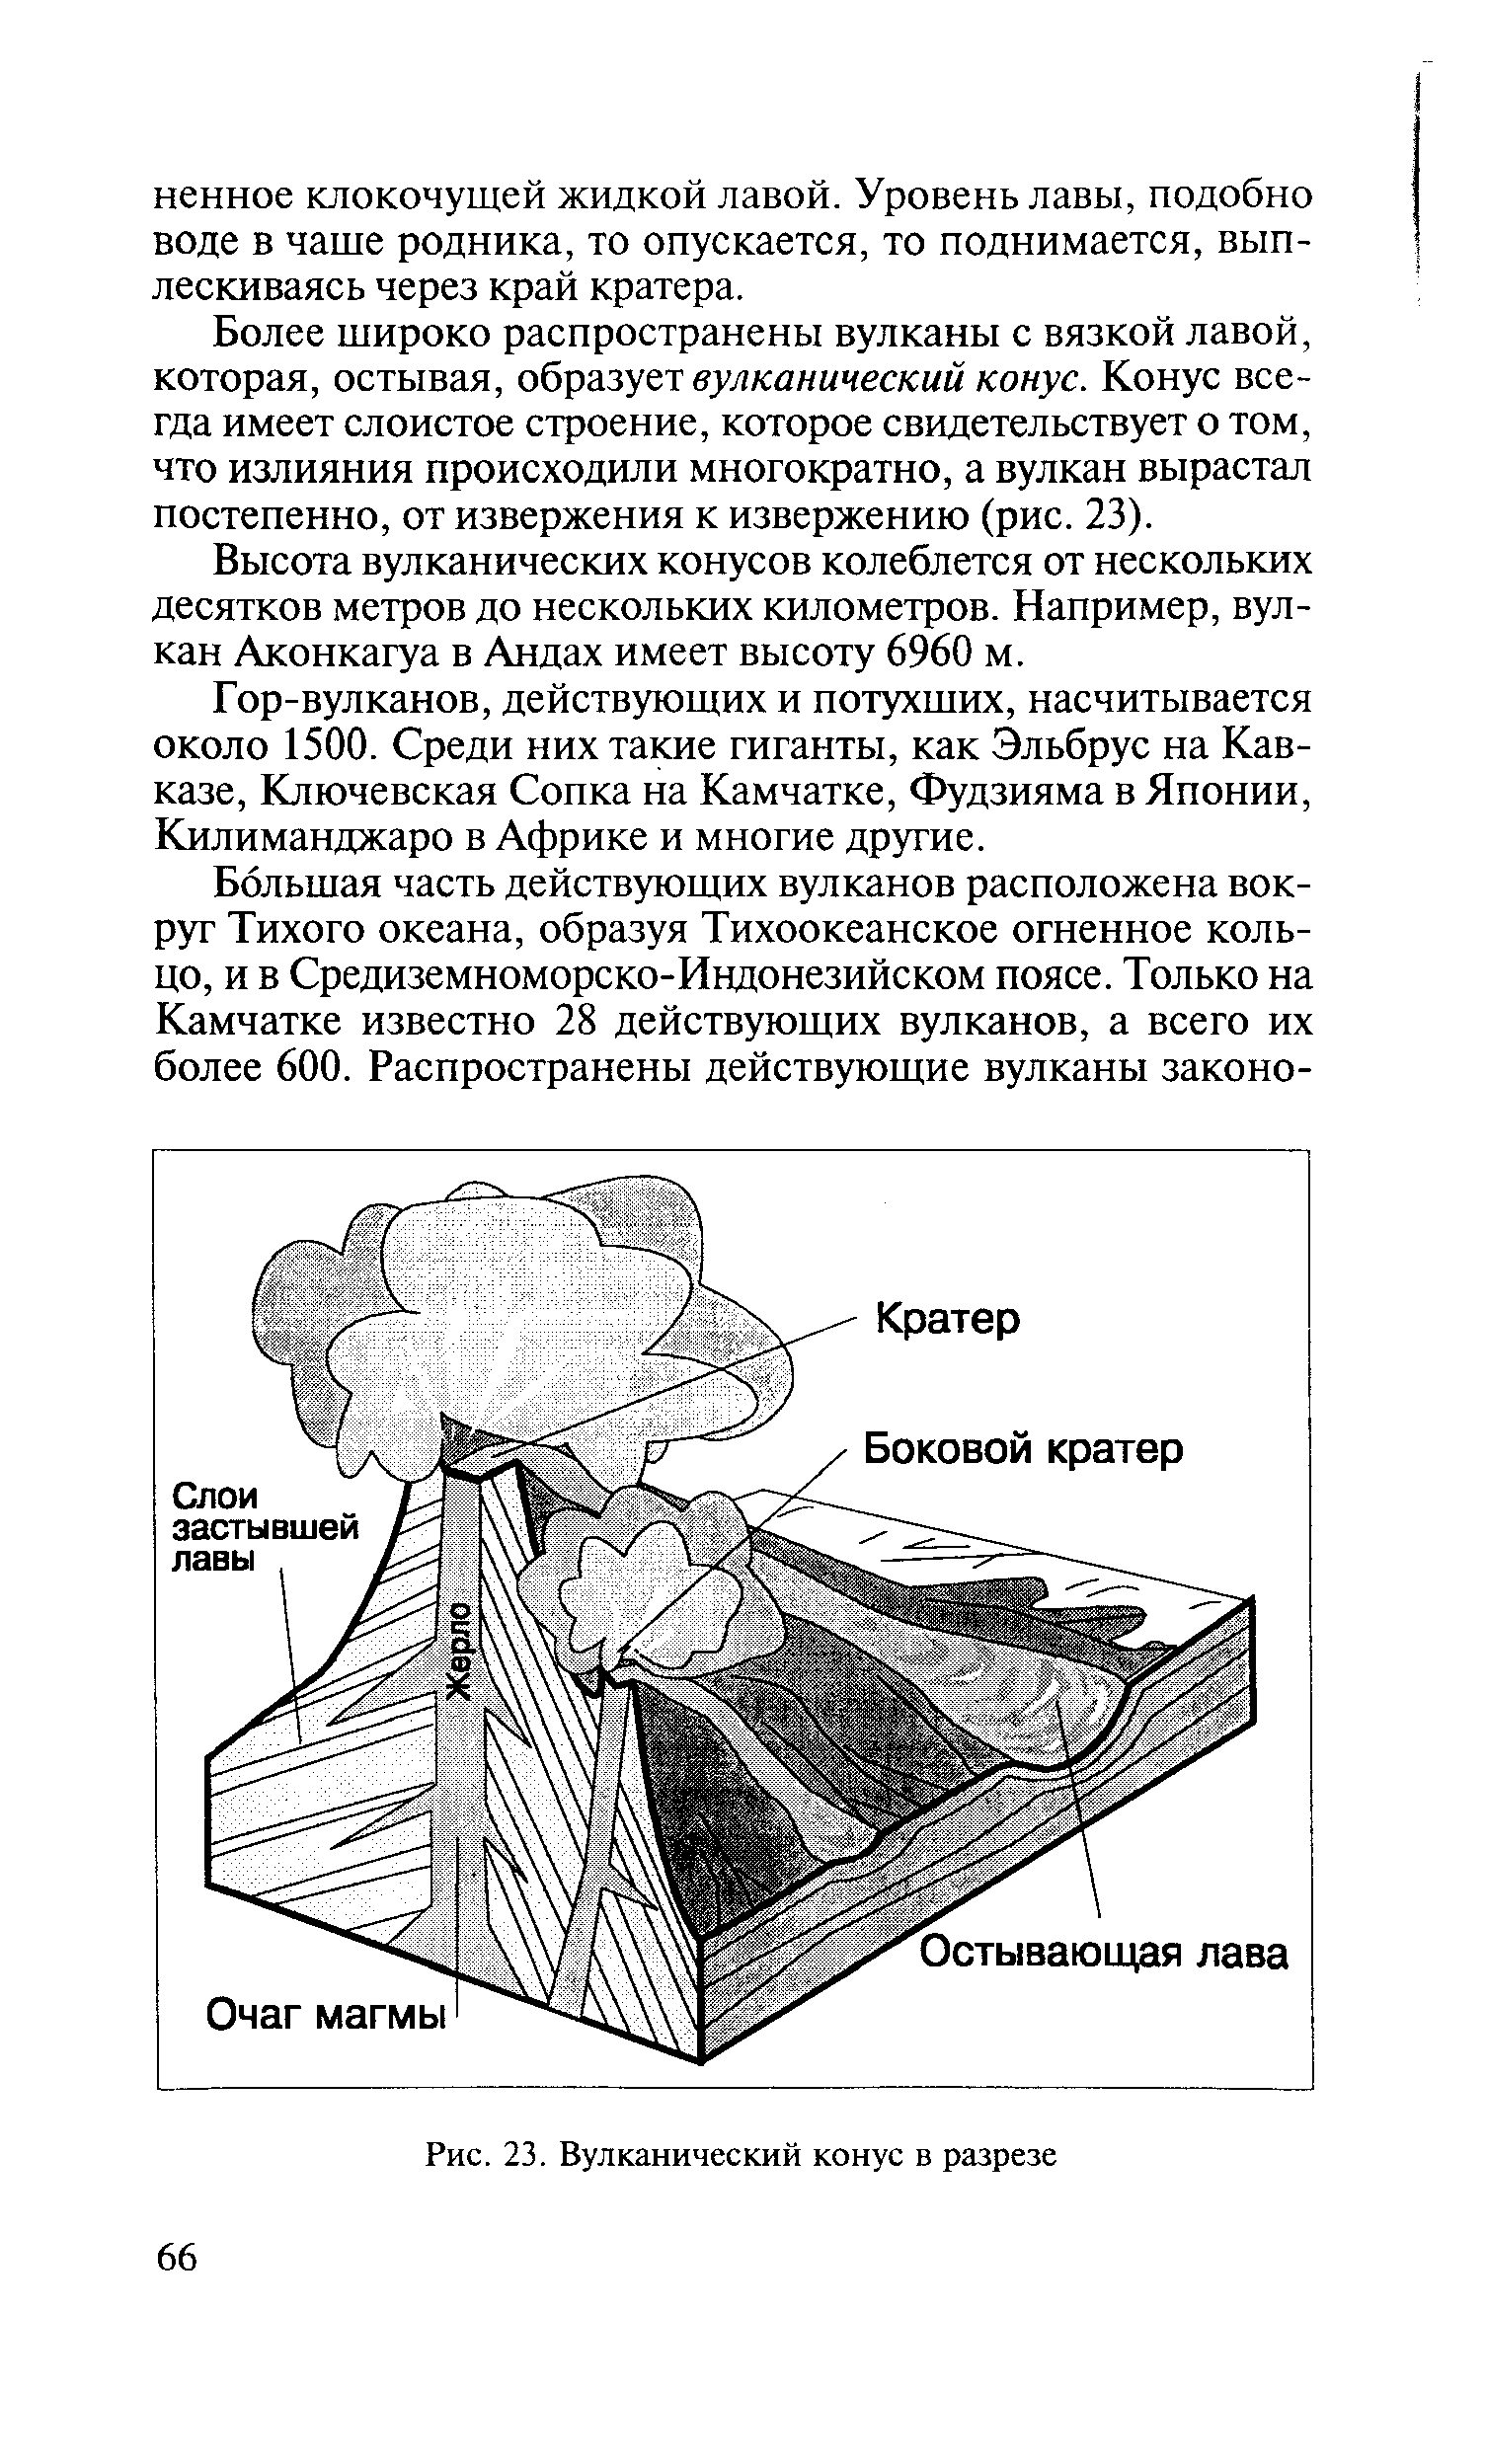 Схема вулкана в разрезе